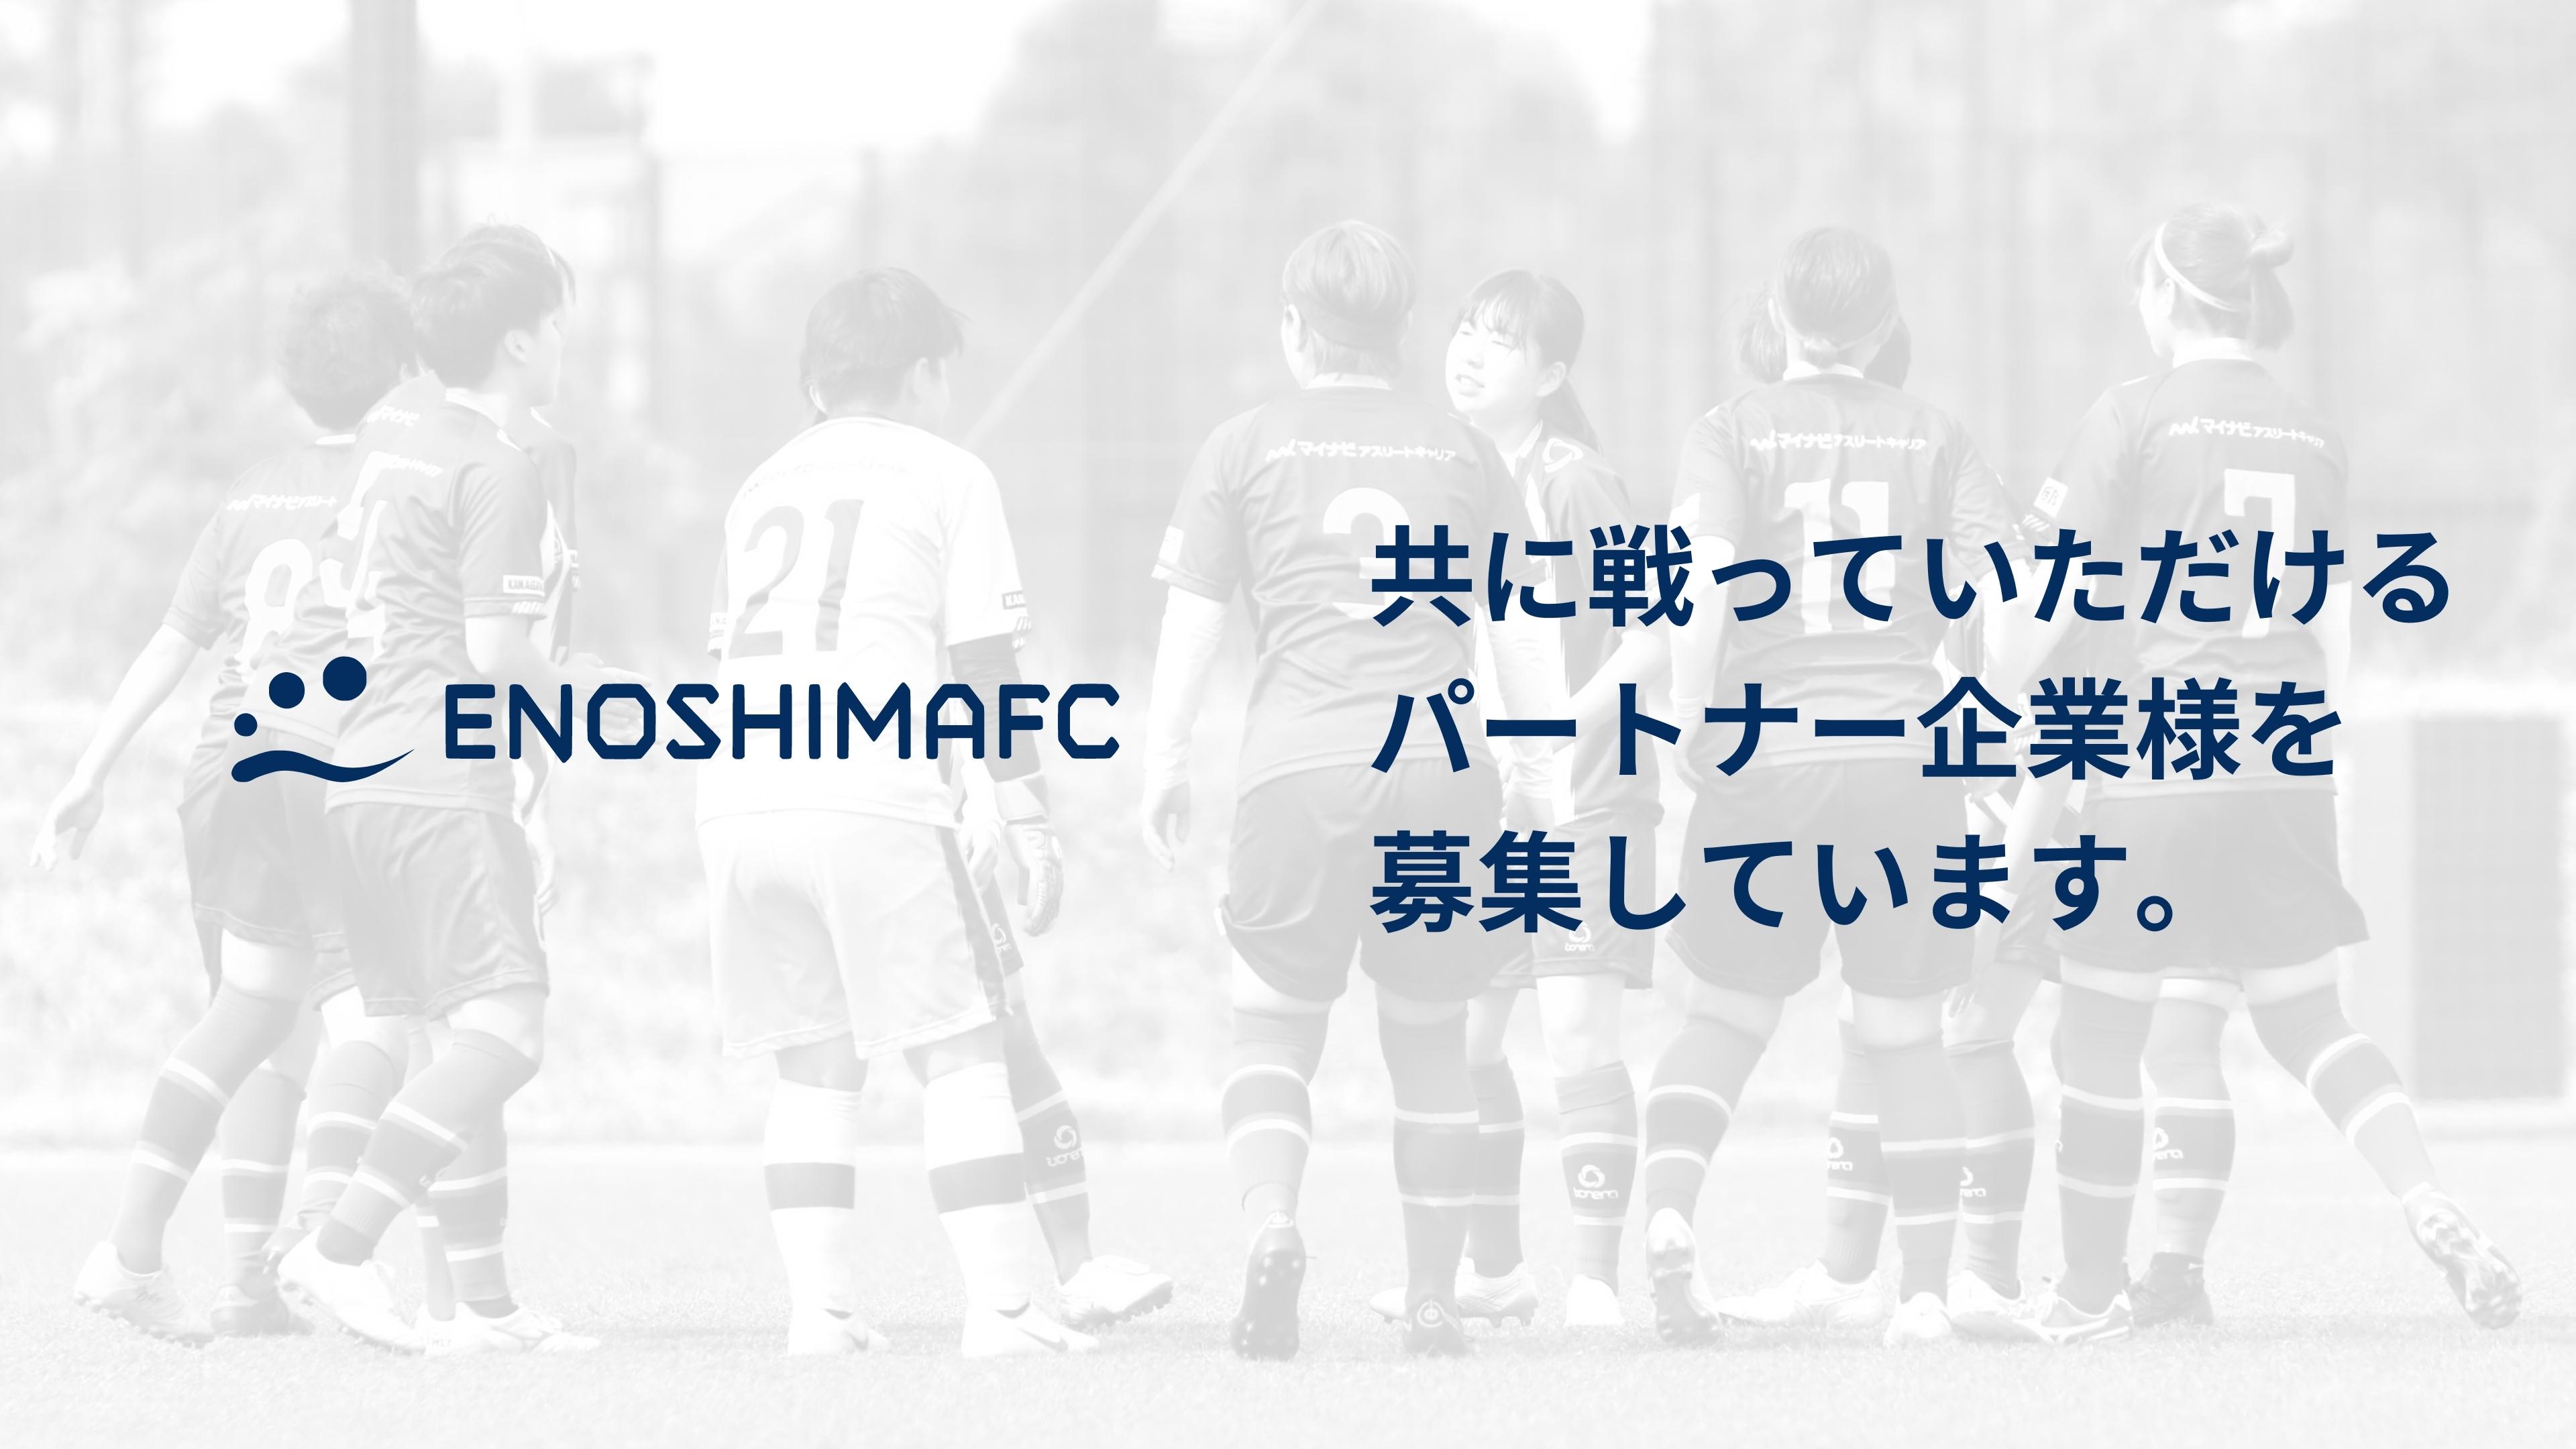 藤沢市初の女子プロサッカーチームを目指す 江の島fc 新たなパートナー企業様を募集 合同会社enoshimafcのプレスリリース